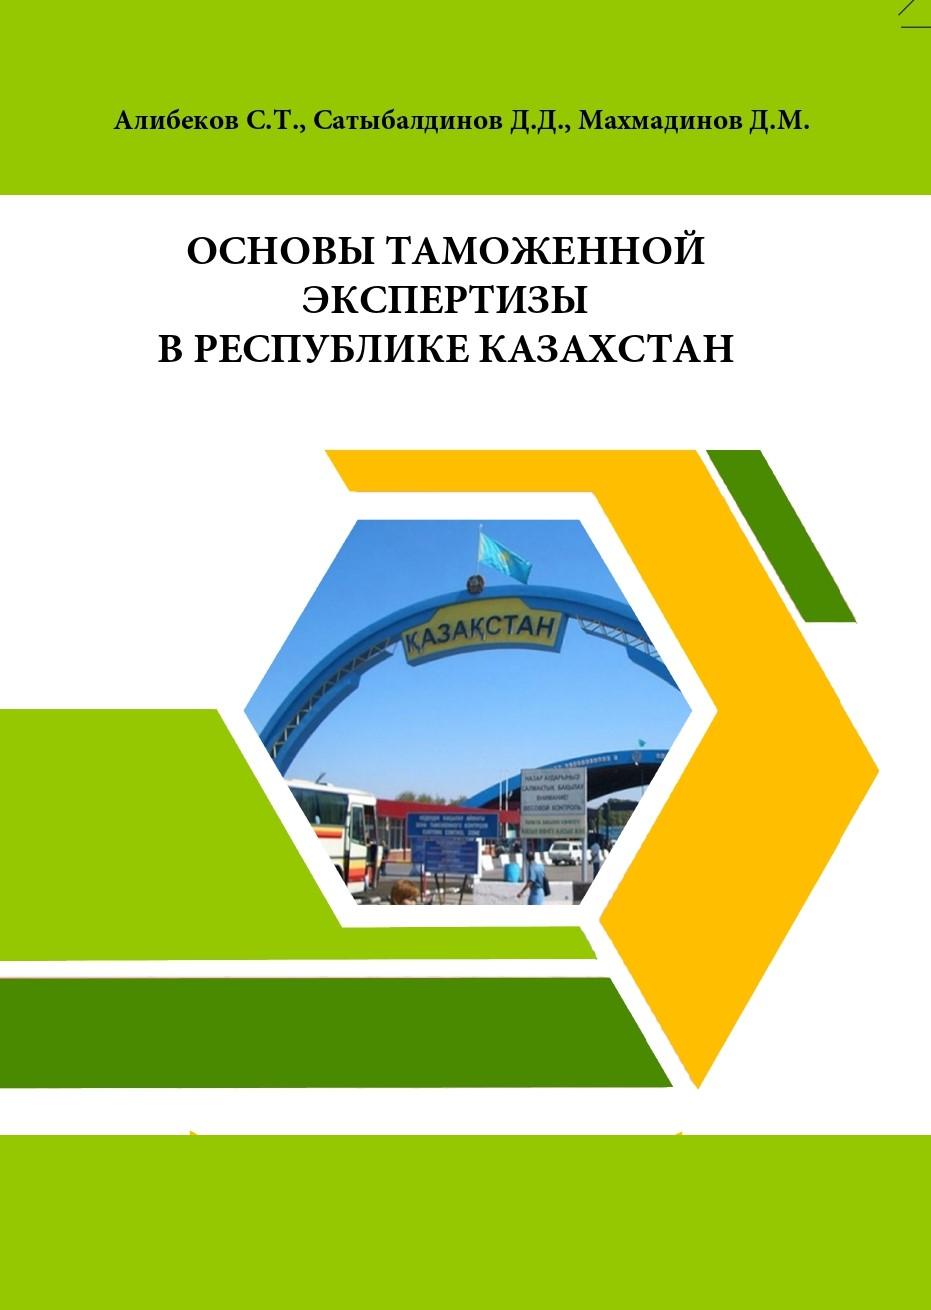 Основы таможенной экспертизы в Республике Казахстан: учебное пособие.